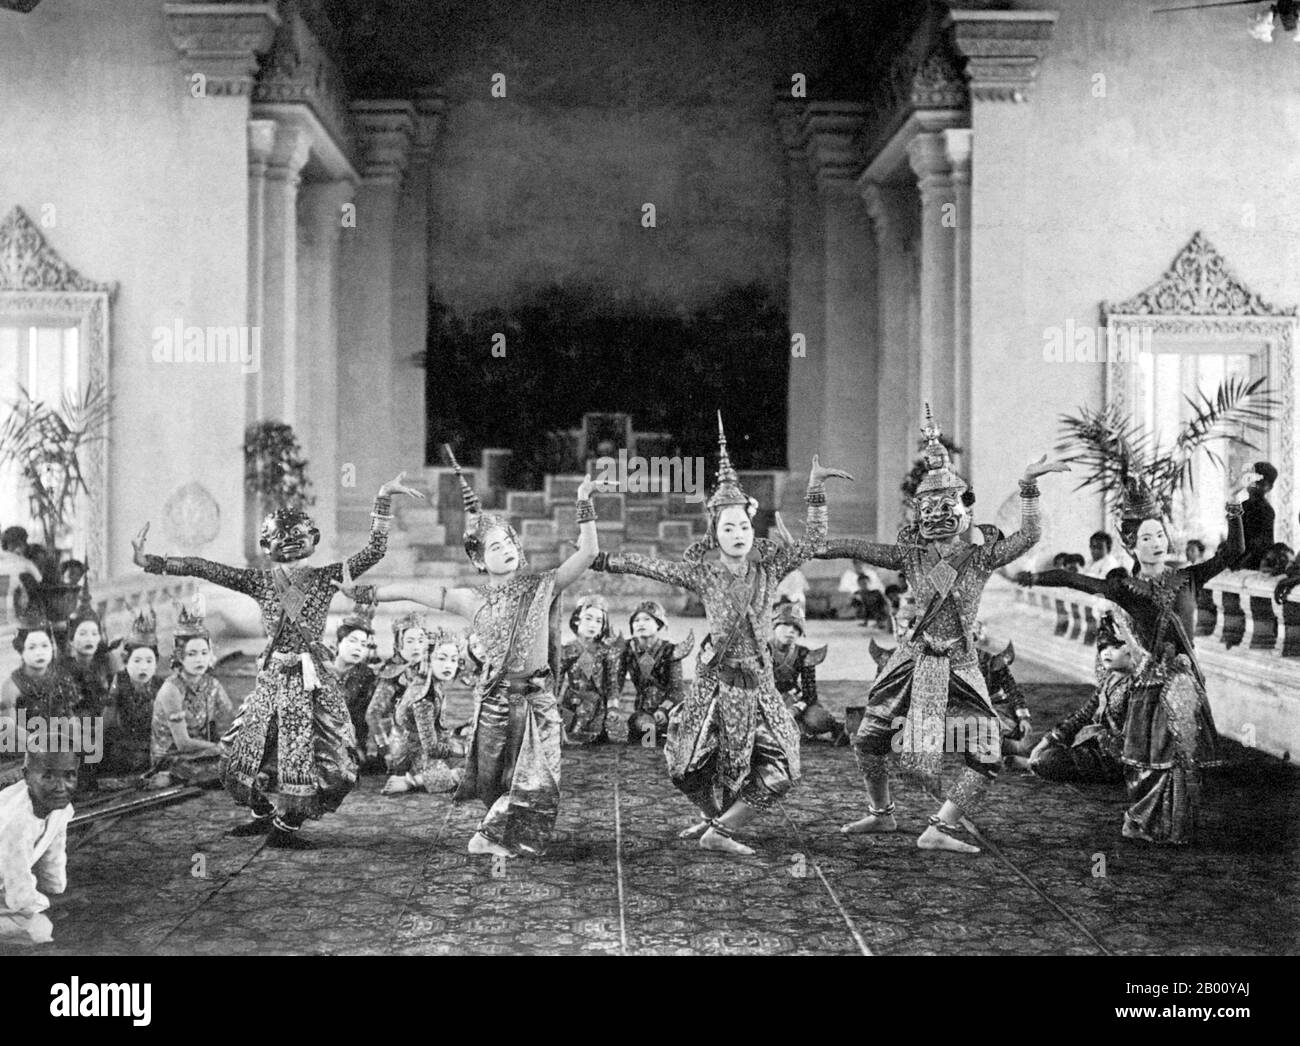 Kambodscha: Ein Foto von einer Probe des Khmer Royal Ballet im Chanchay Pavilion in Phnom Penh aus dem Jahr 1929. Khmer klassischer Tanz ist eine traditionelle Form des Tanzes in Kambodscha, die viele Ähnlichkeiten mit klassischen Tänzen von Thailand und Laos teilt. Die kambodschanische Form ist unter verschiedenen Namen in Englisch bekannt, wie Khmer Royal Ballet und Cambodian Court Dance. Als hoch stilisierte Kunstform, die hauptsächlich von Frauen gespielt wurde, beschränkte sich der klassische Khmer-Tanz während der französischen Protektoratära hauptsächlich auf die Höfe königlicher Paläste, die von den Konkubinen, Verwandten und Begleitern aufgeführt wurden. Stockfoto